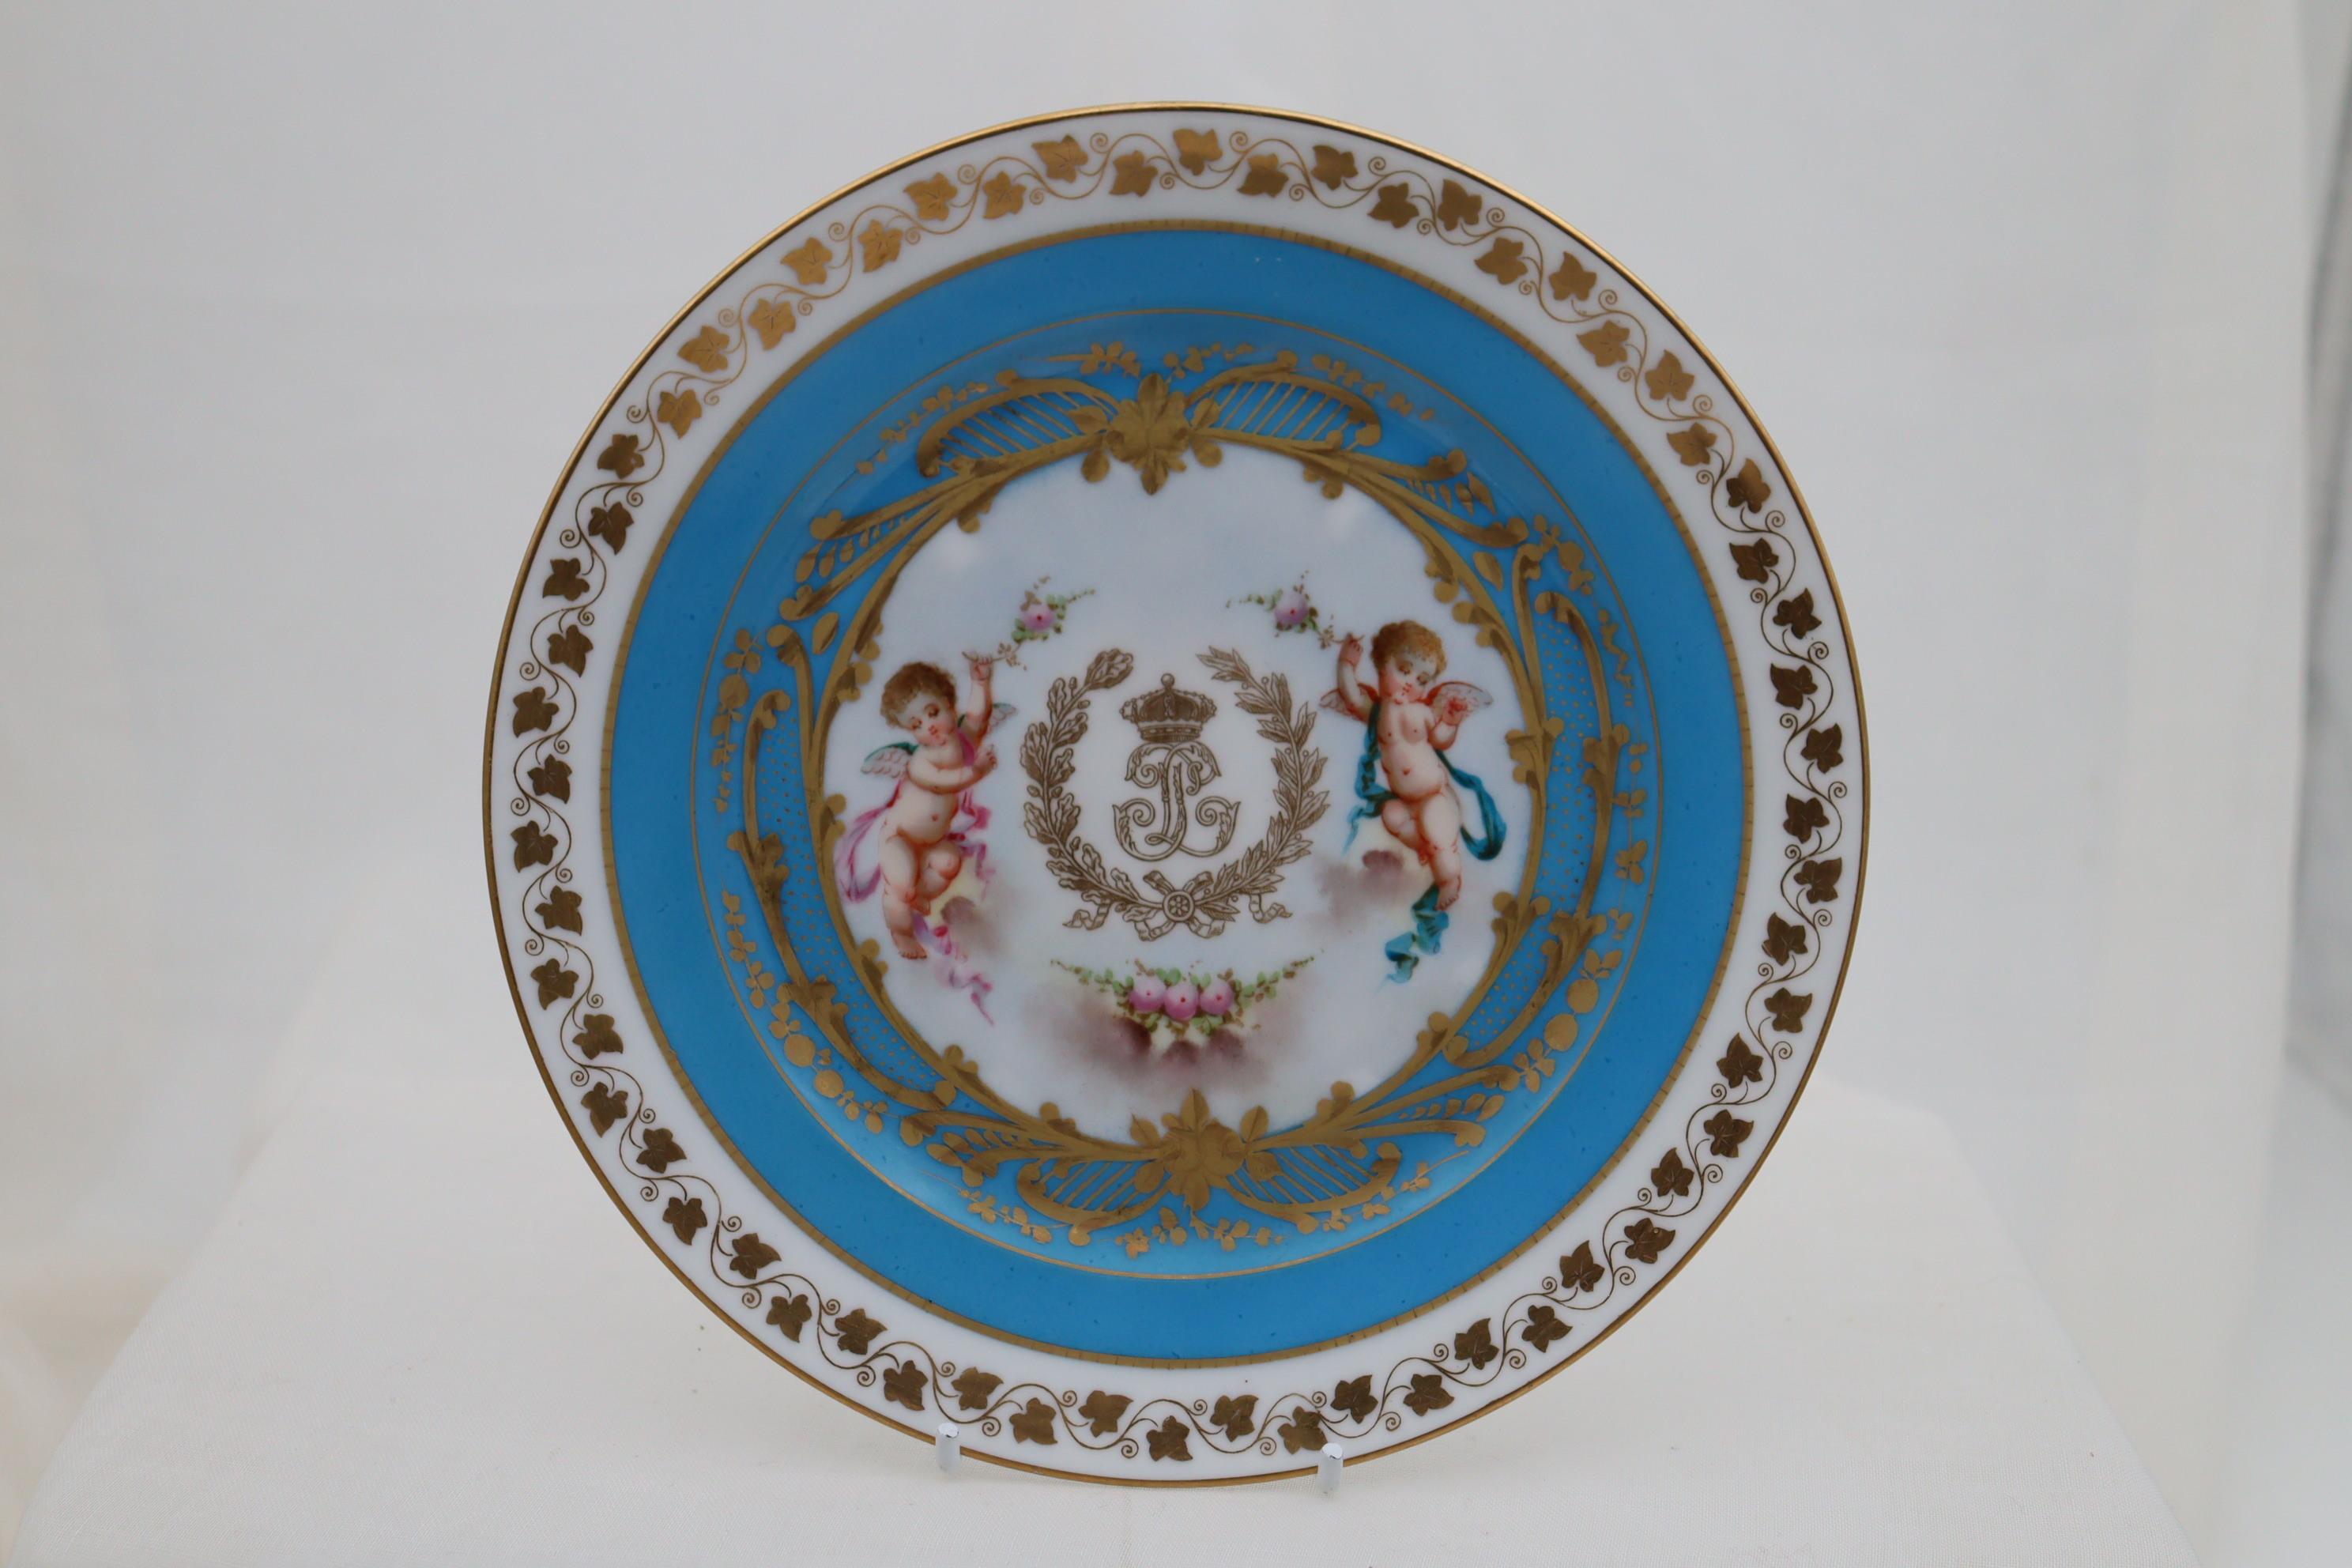 Dieses Paar kleiner handgemalter Teller aus Sèvres ist in der Mitte mit einem vergoldeten Monogramm unter einer Krone verziert, das auf König Louis Phillippe 1 (1773-1850) hinweist, der von 1830-1848 als König von Frankreich regierte. Zu beiden